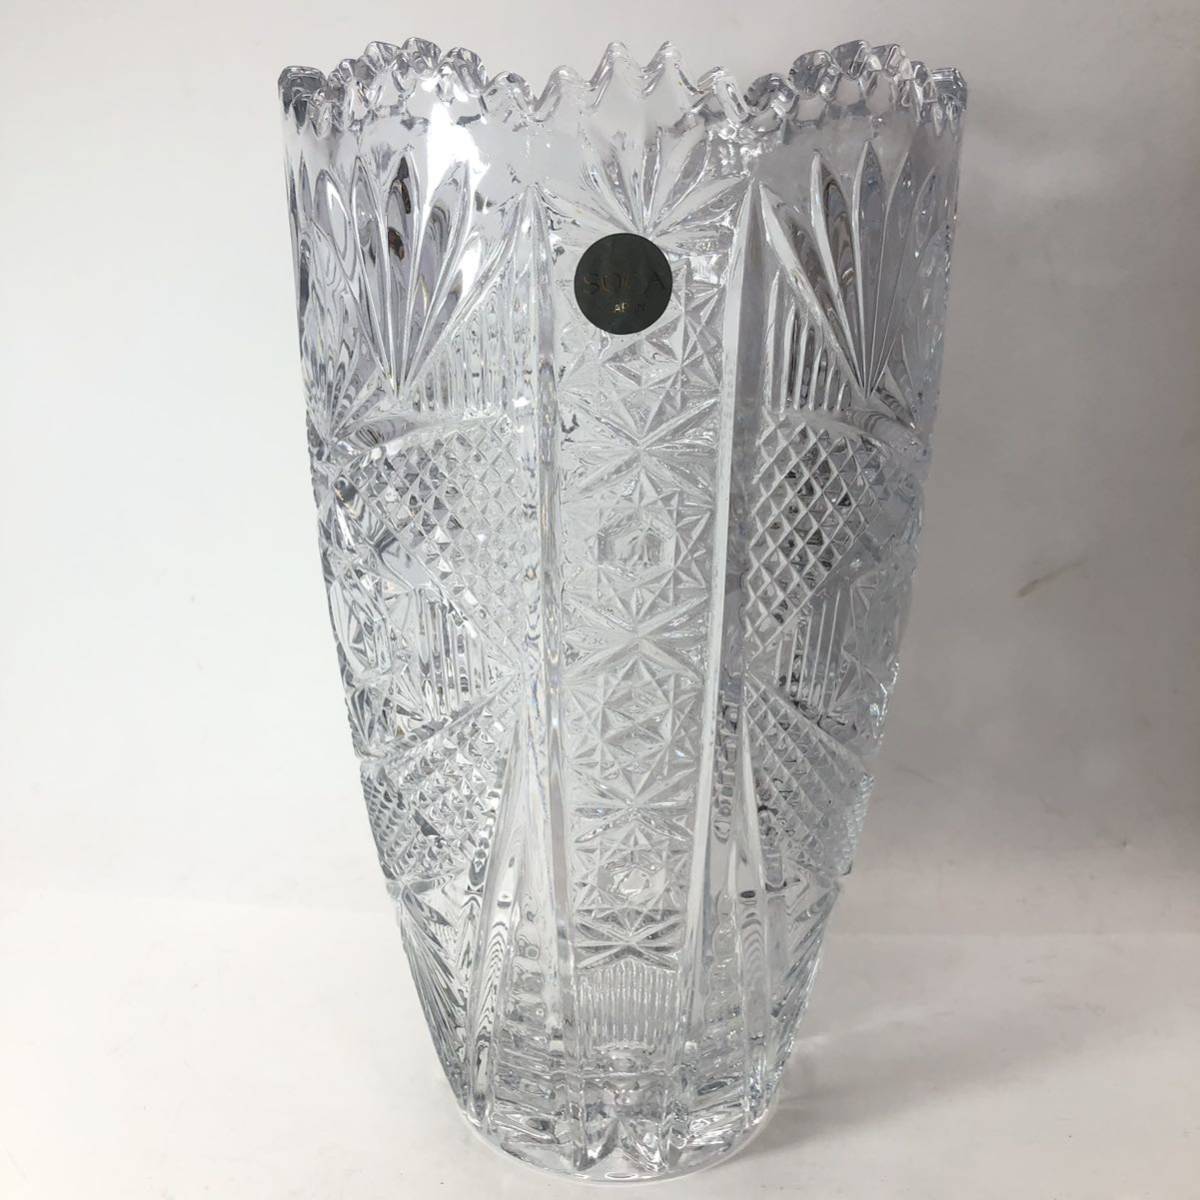 SOGA GLASS 曽我ガラス フラワーベース 花瓶 花器 花入 ガラス製品 インテリア 高さ27cm_画像1